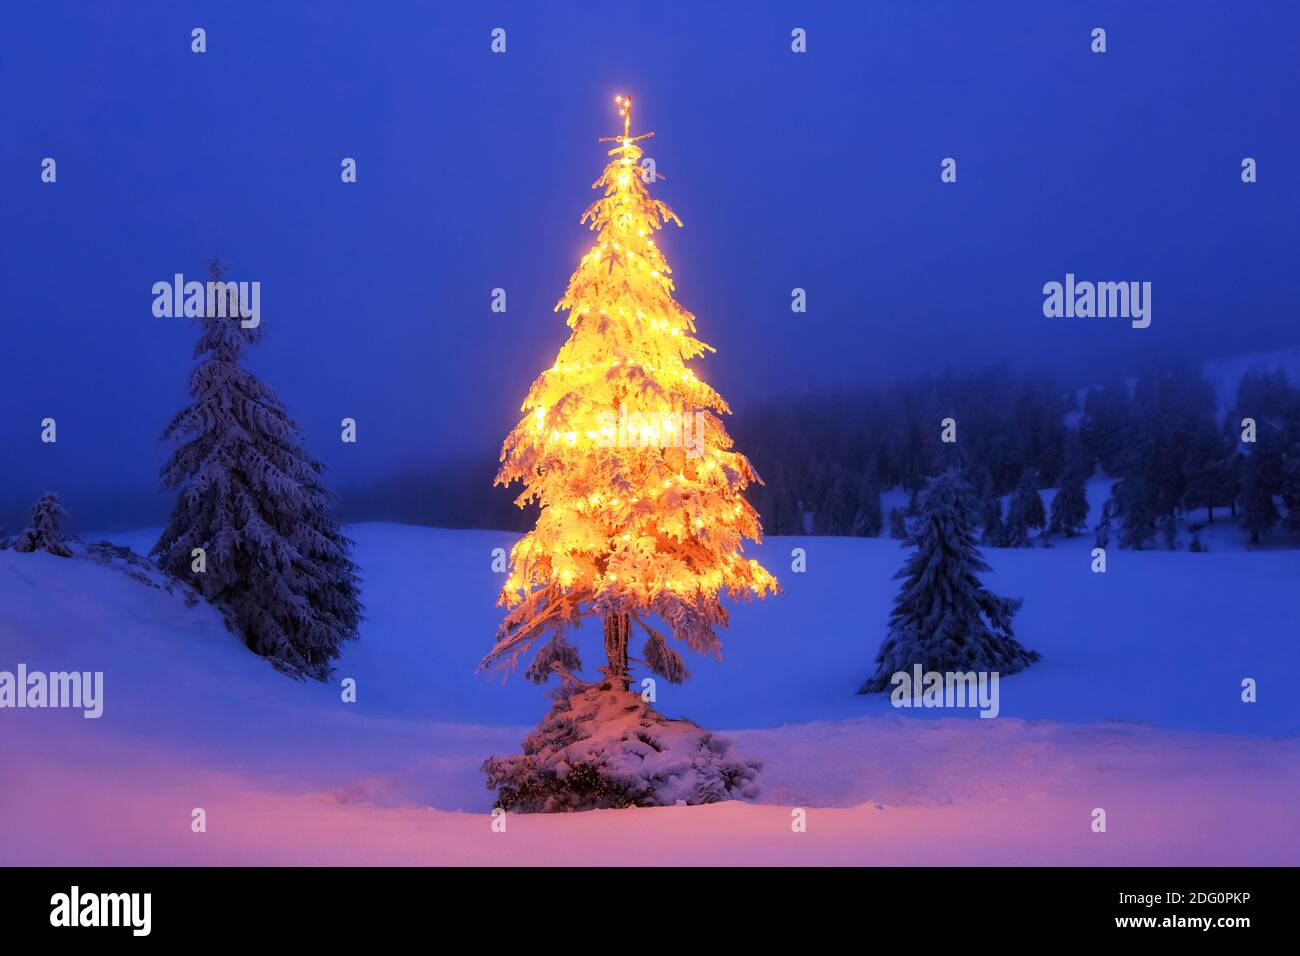 Sfondo di Natale. Albero di Natale decorato con coloratissimi garlands si erge sul prato innevato. Notte inverno paesaggi di montagna. Foto Stock